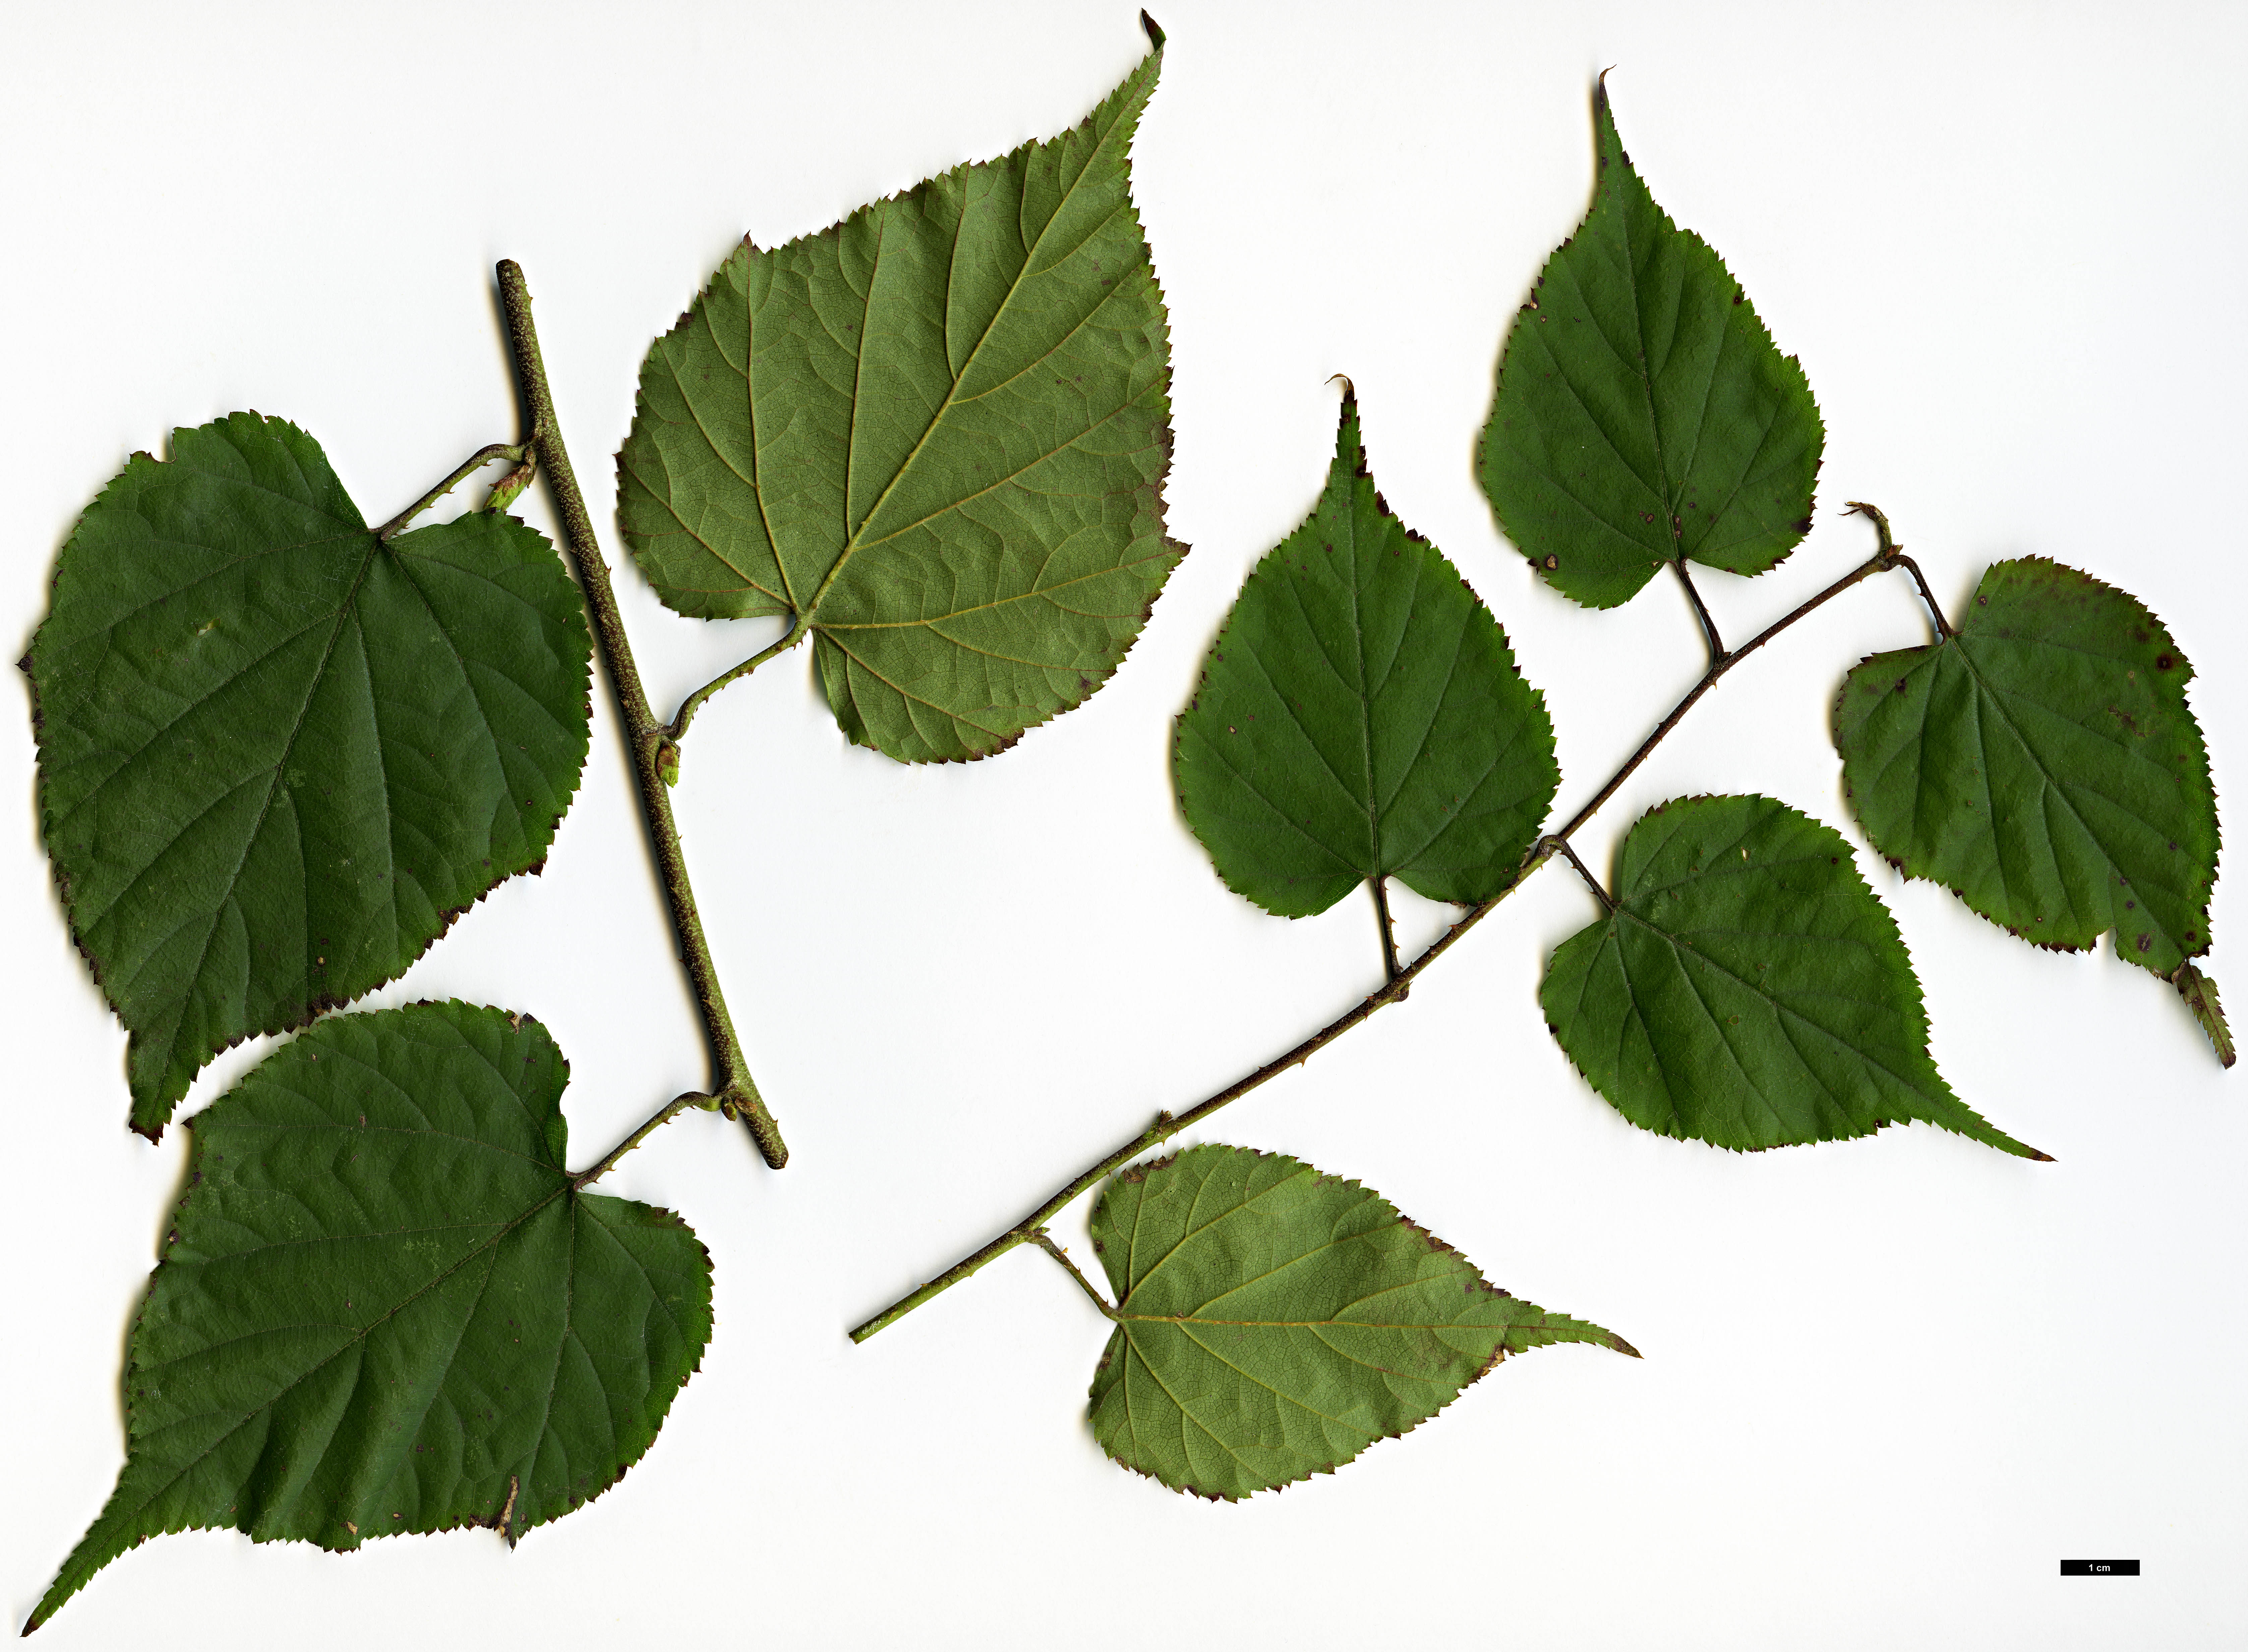 High resolution image: Family: Rosaceae - Genus: Rubus - Taxon: lambertianus - SpeciesSub: var. morii